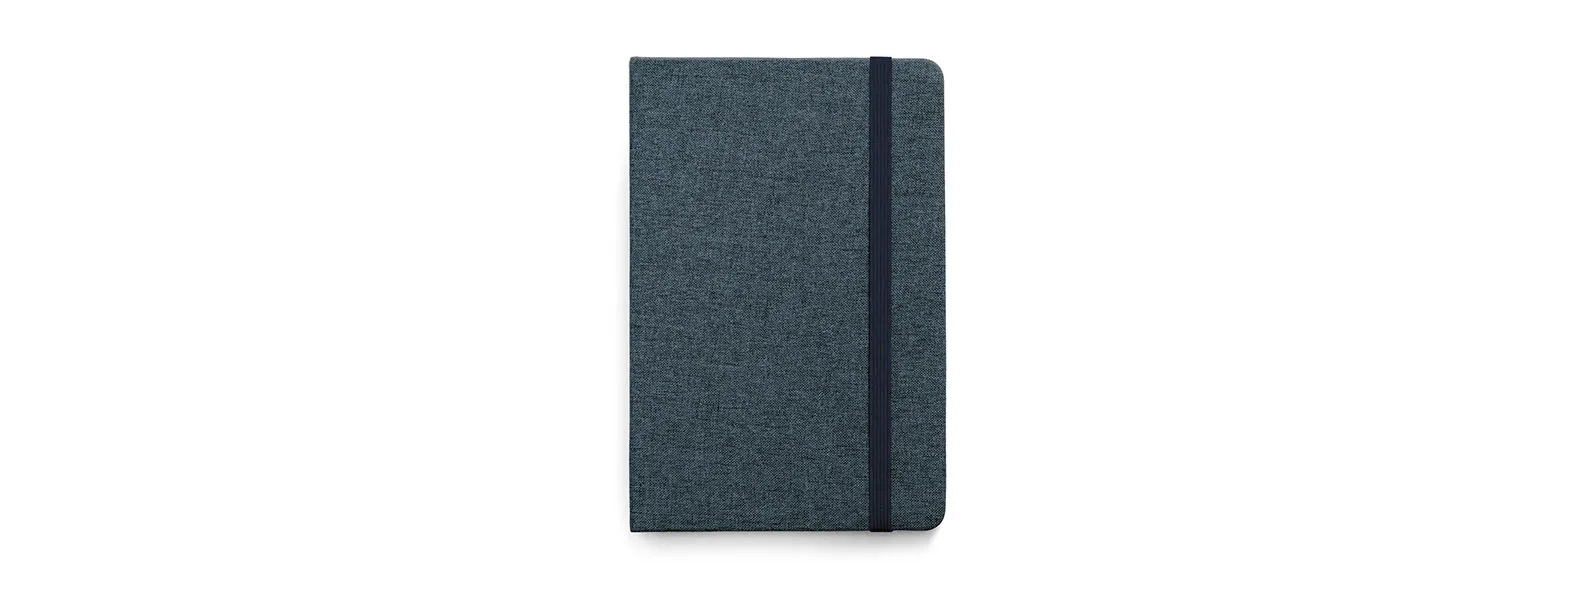 Caderno para anotações com capa dura revestida de Poliéster azul. Conta com 80 folhas pautadas, marca página e elástico para fechamento. Gramatura da folha de 70 g/m2